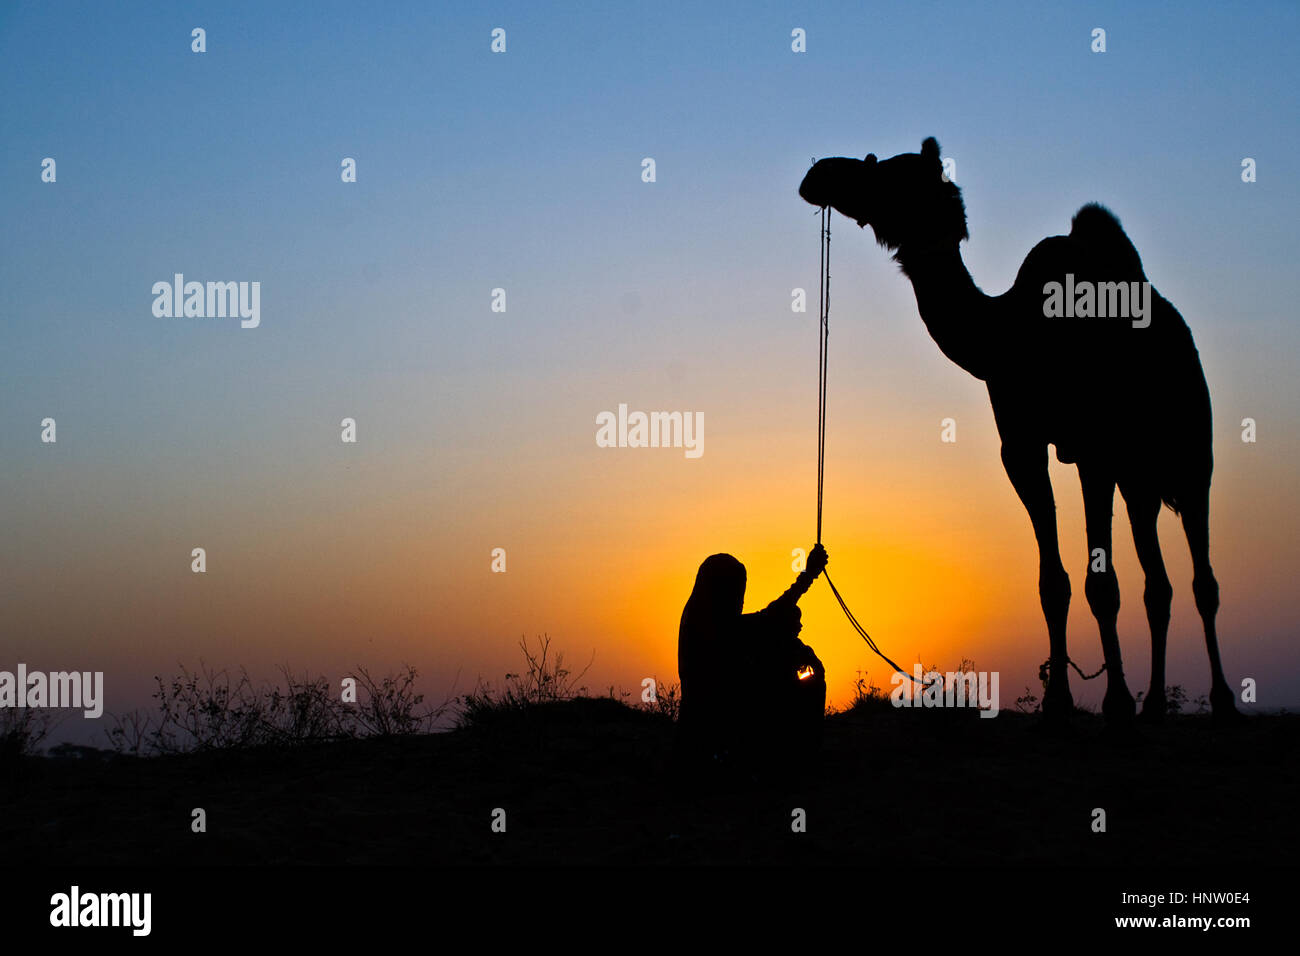 Une silhouette classique de Pushkar, une dame tenant la bride d'un chameau, un enfant sur ses genoux, coucher de soleil, lumière dorée et bleu ciel Banque D'Images